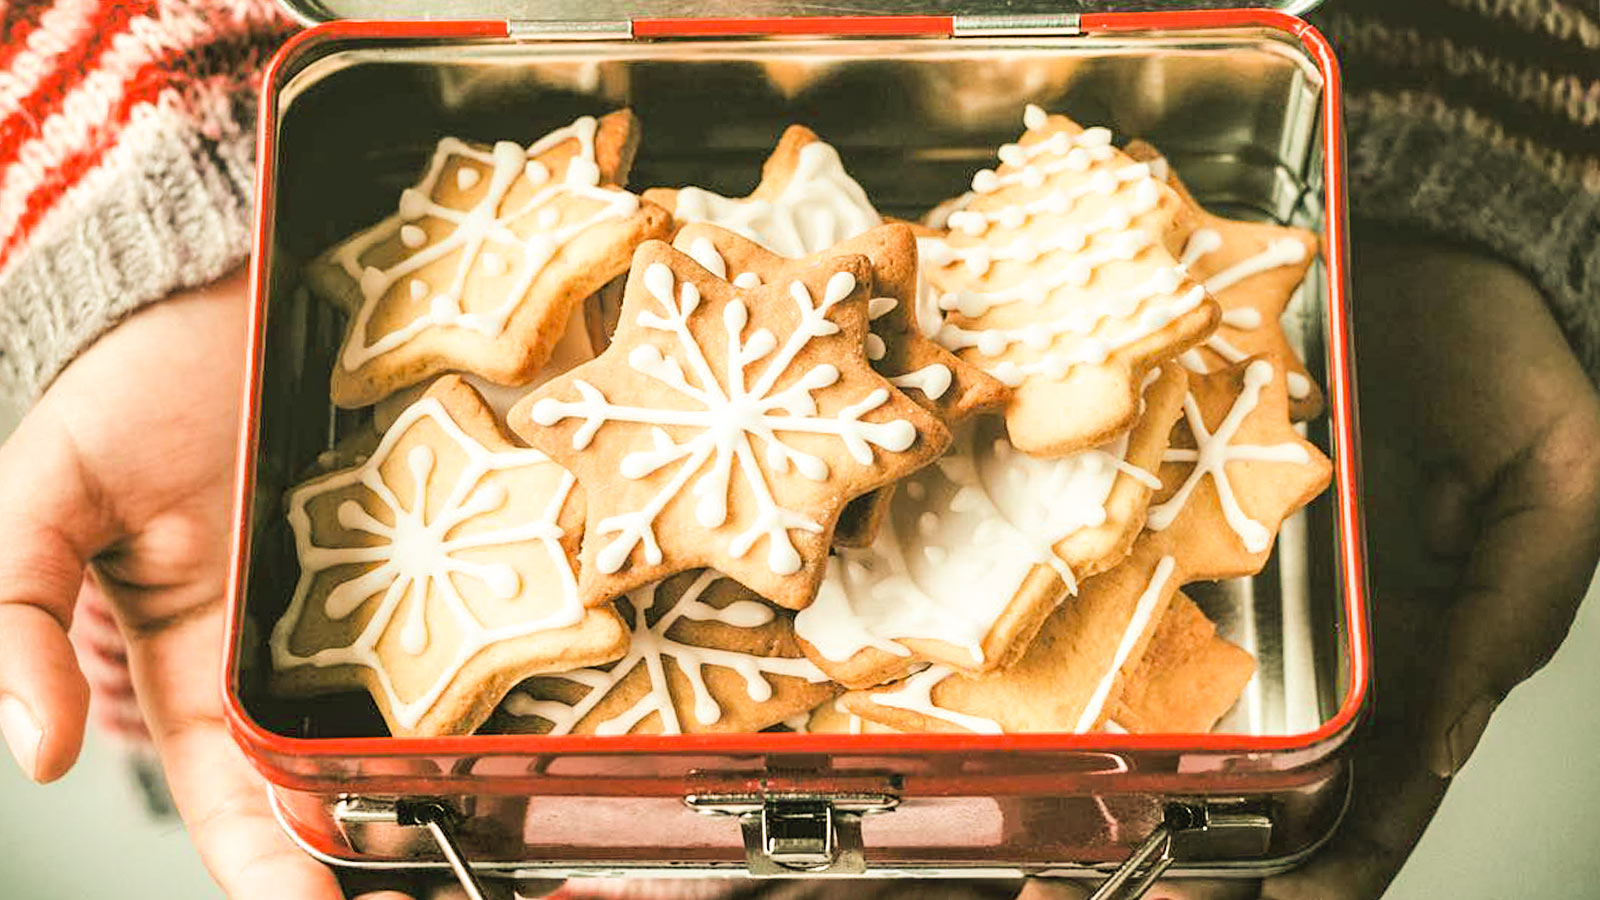 Ricette Natale.Biscotti Di Natale Con Glassa Al Limone Gnamit Il Portale Delle Ricette